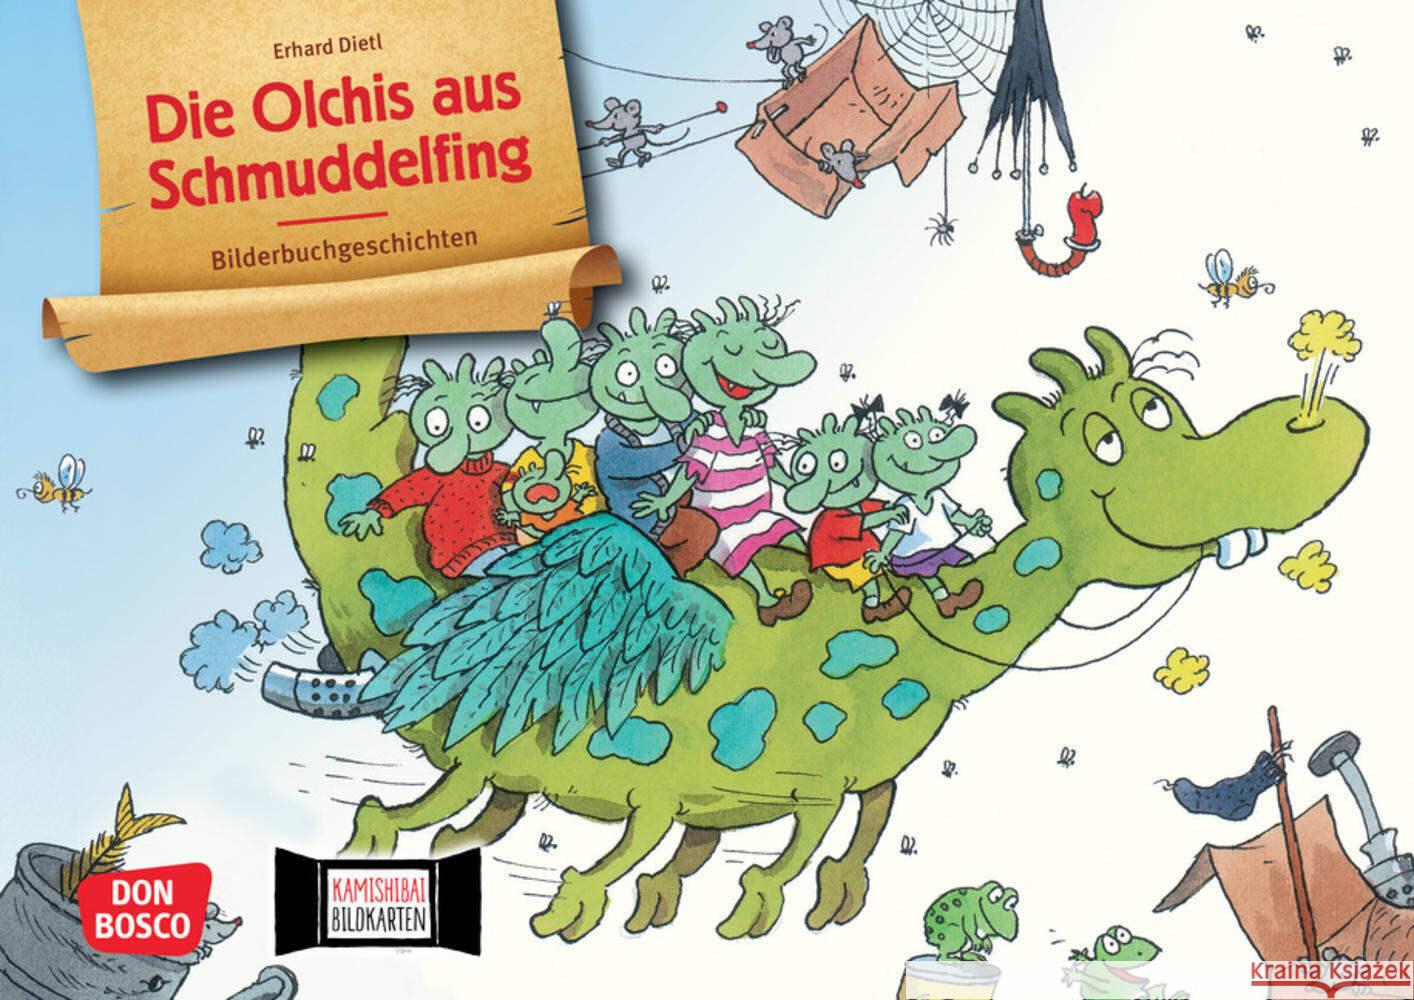 Die Olchis aus Schmuddelfing. Kamishibai Bildkartenset Dietl, Erhard 4260179517846 Don Bosco Medien - książka